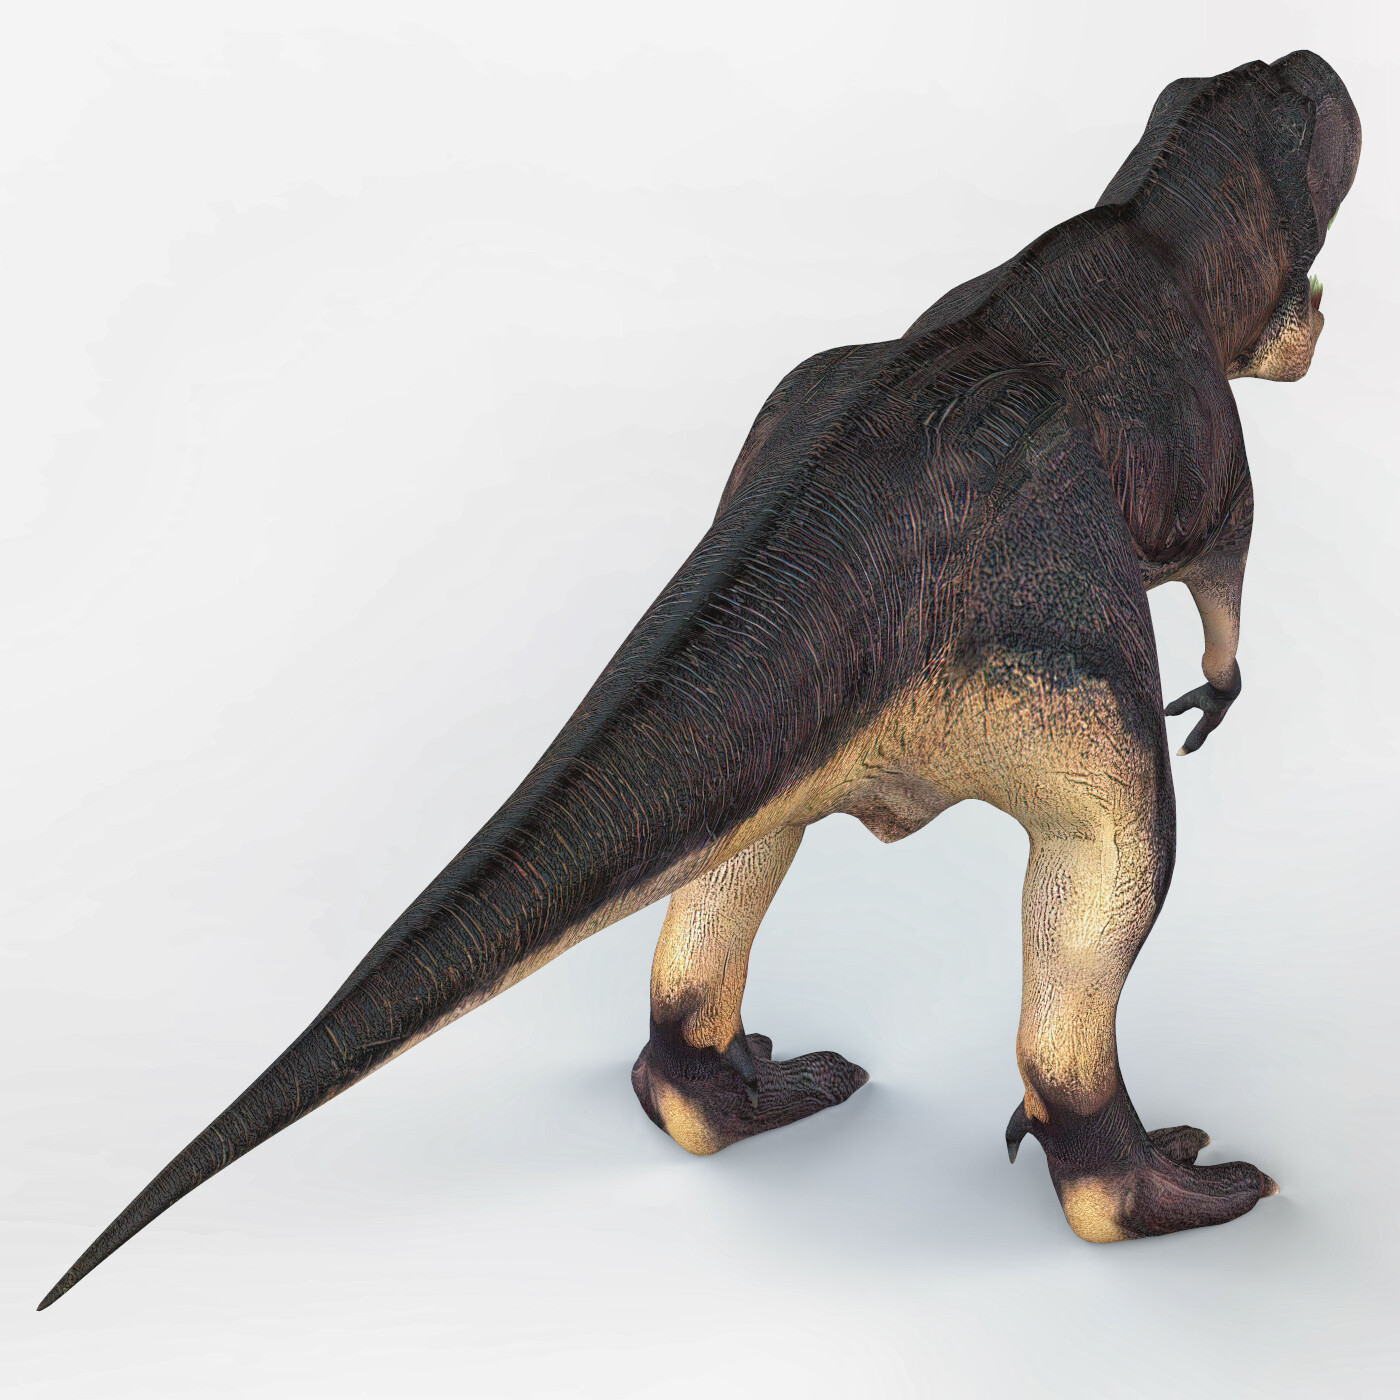 ArtStation - Tyrannosaurus Rex Trex Dinosaur 3D Monster Animal